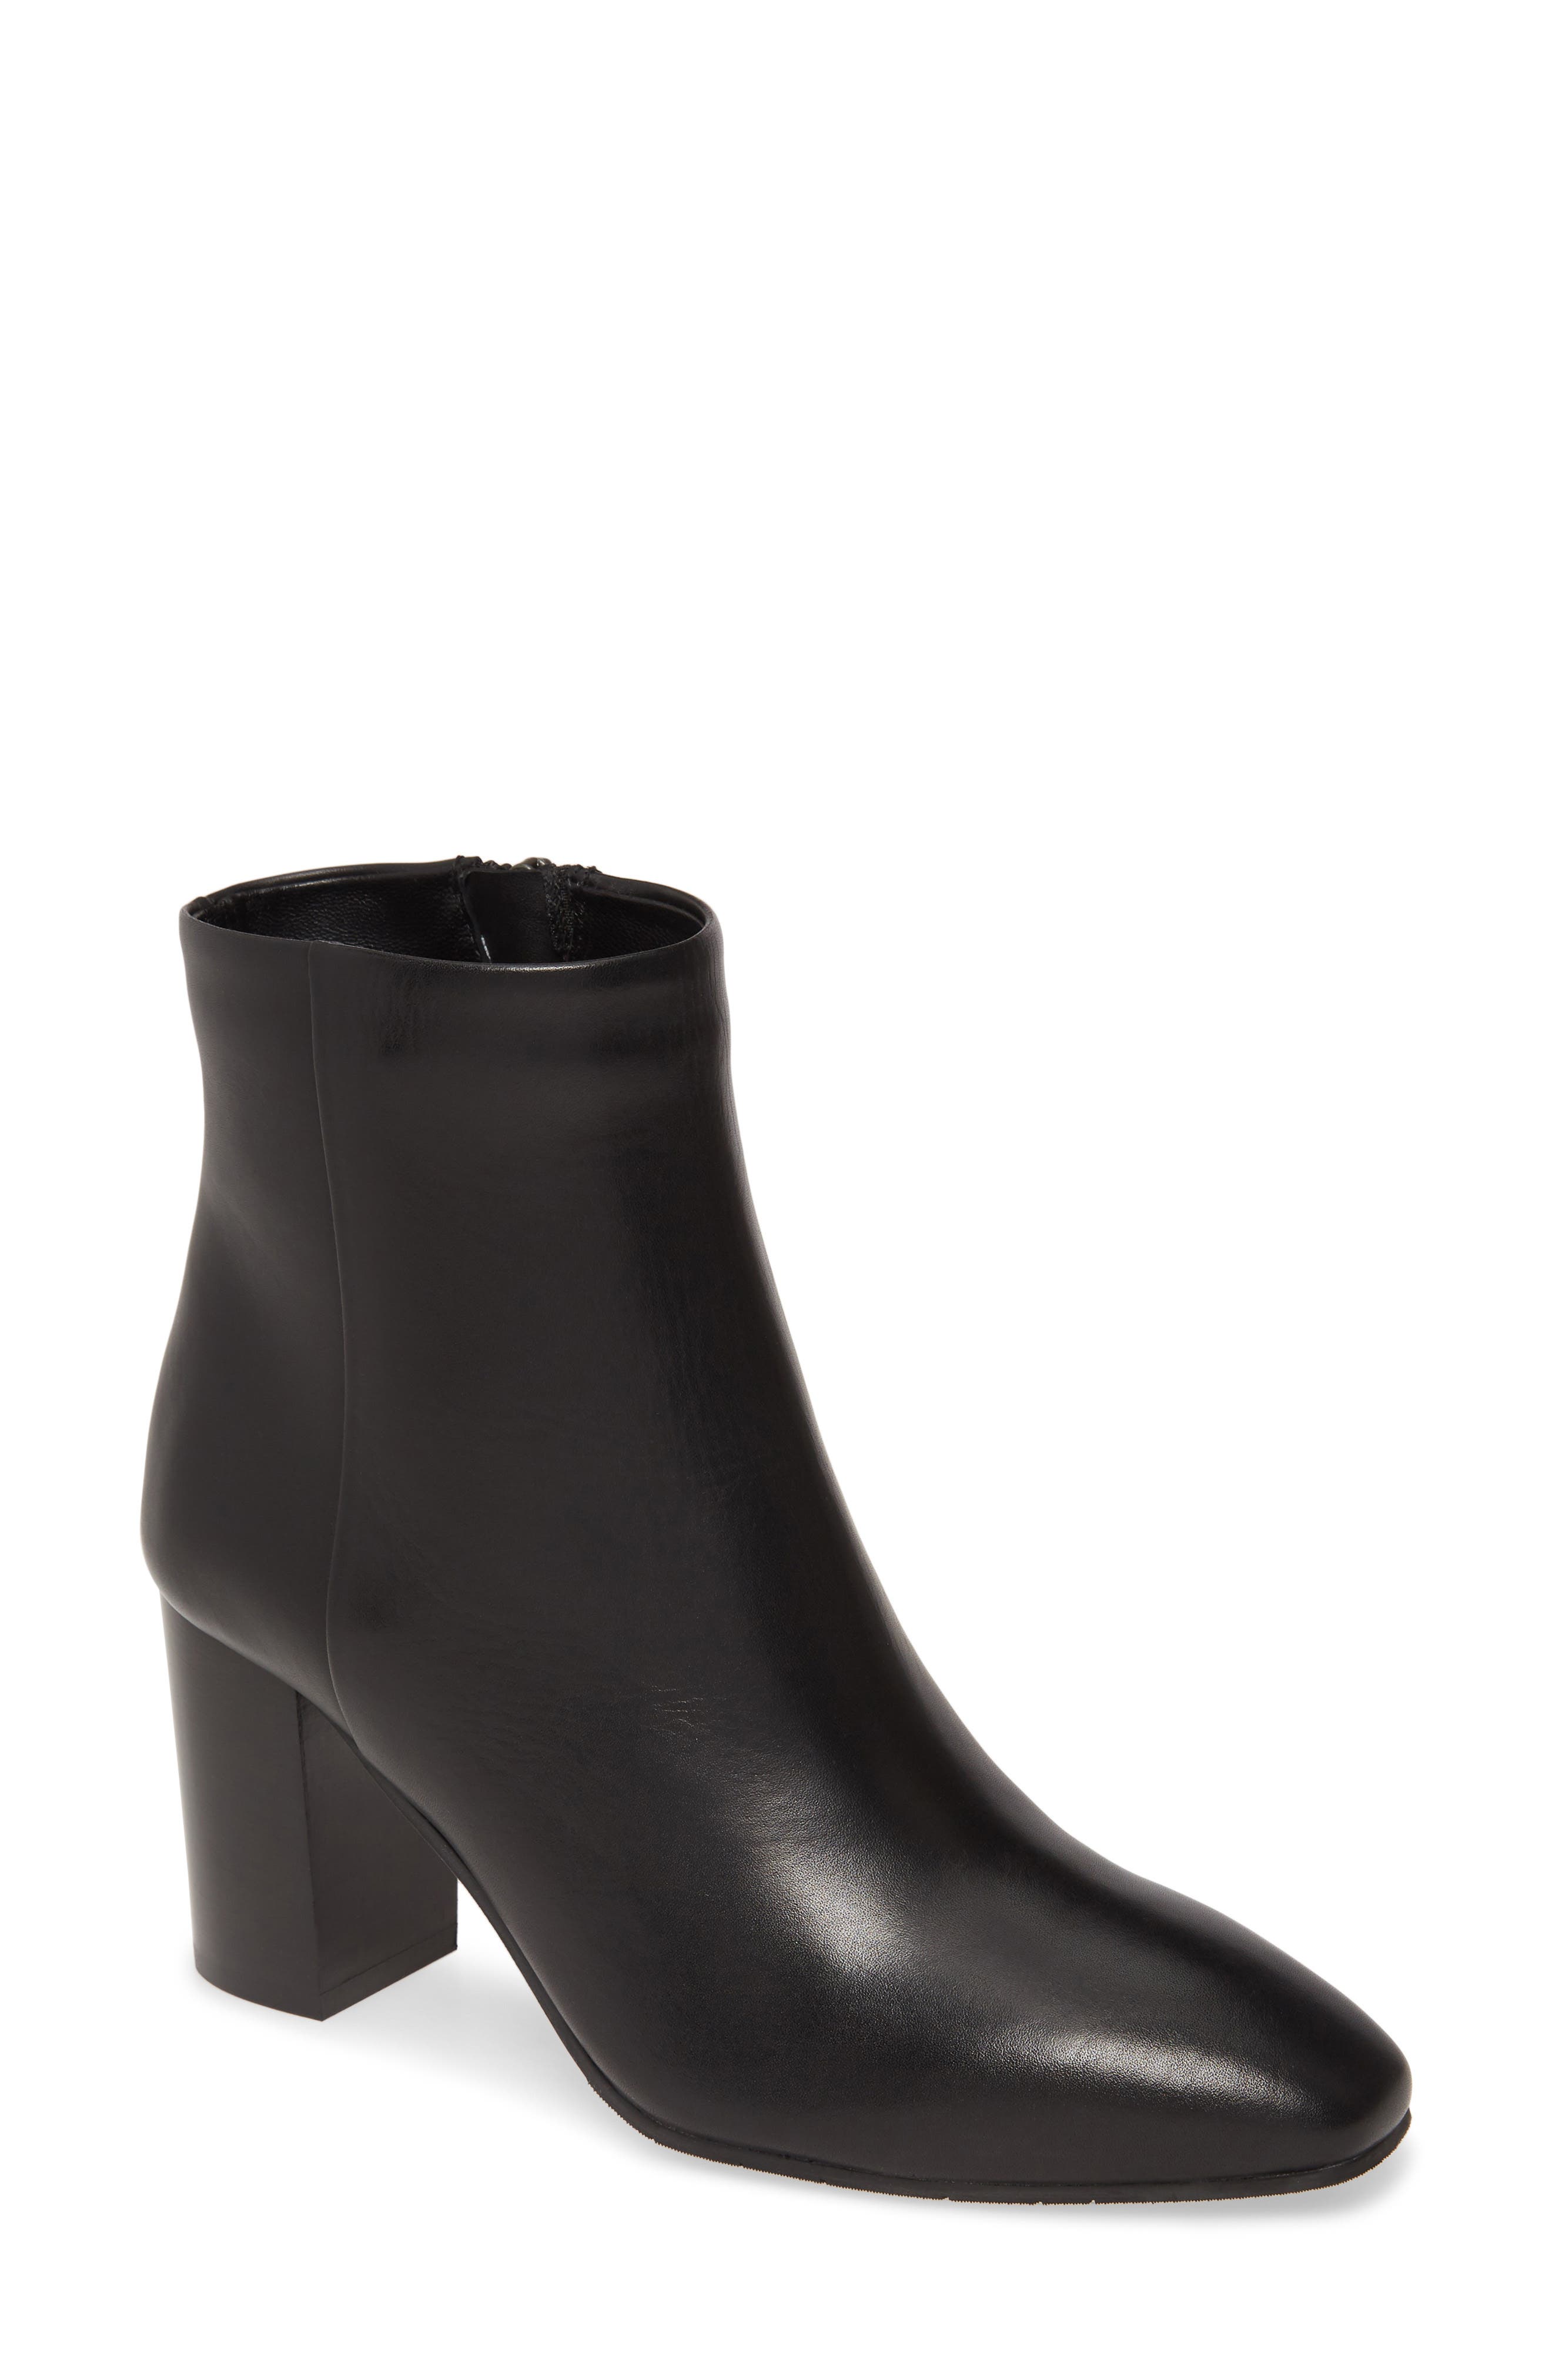 aquatalia leather ankle boots